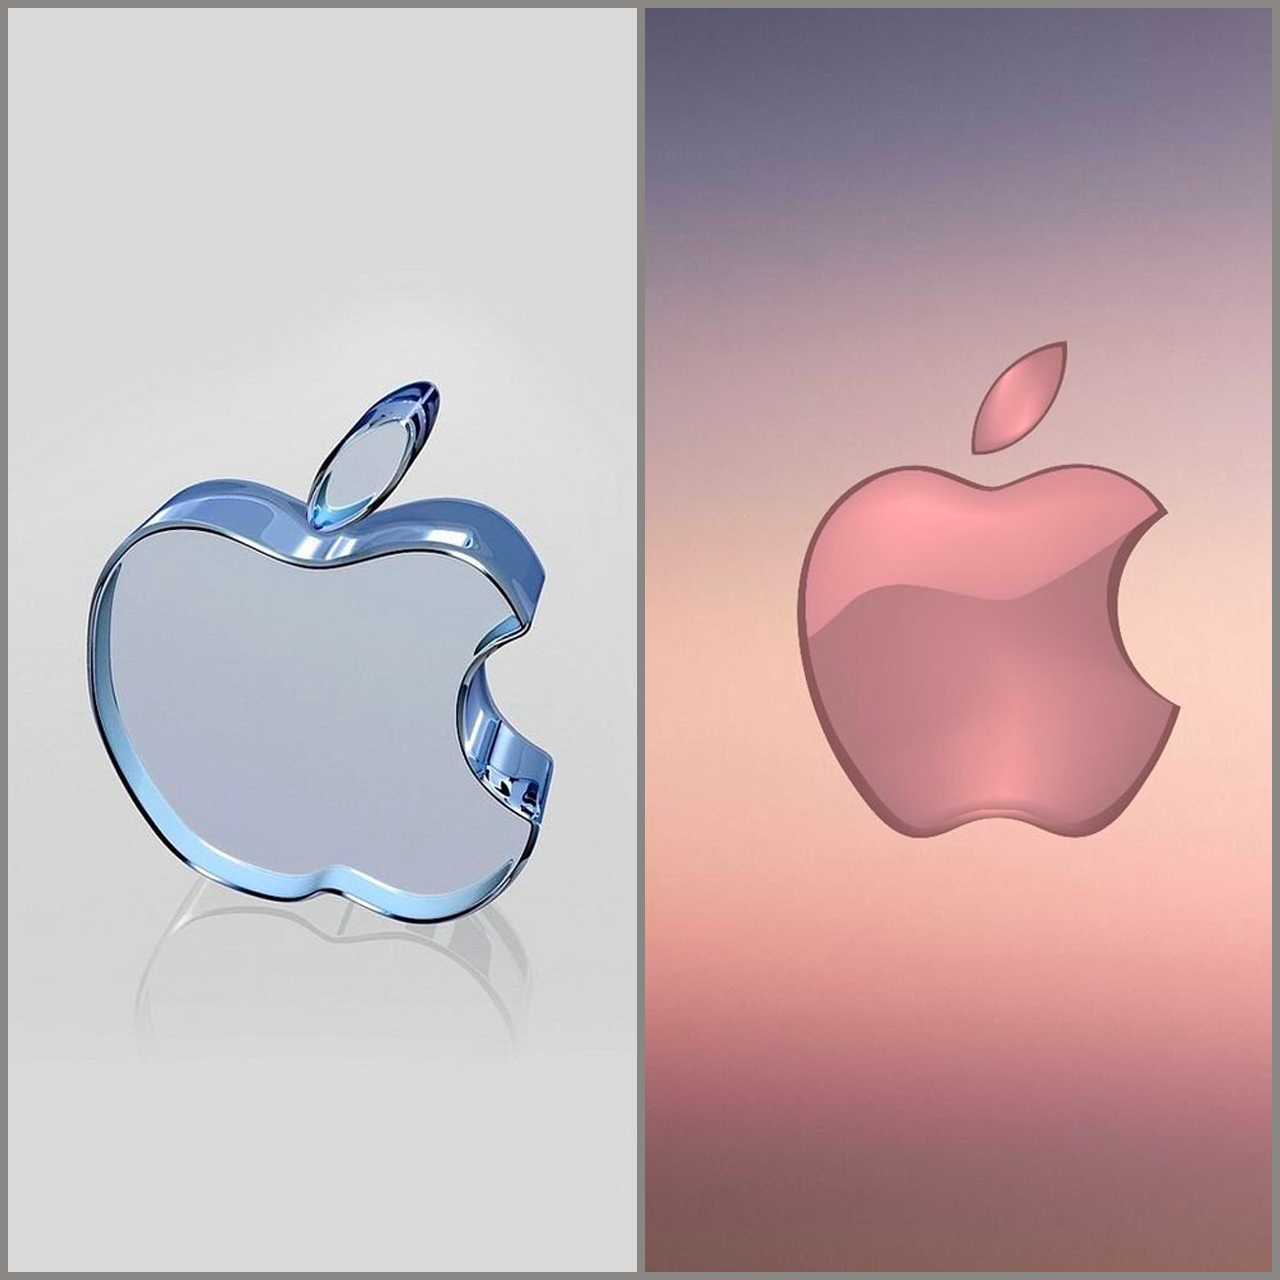 Hình nền quả táo cho iPhone 4K cực chất mà bạn không thể bỏ qua nhé!